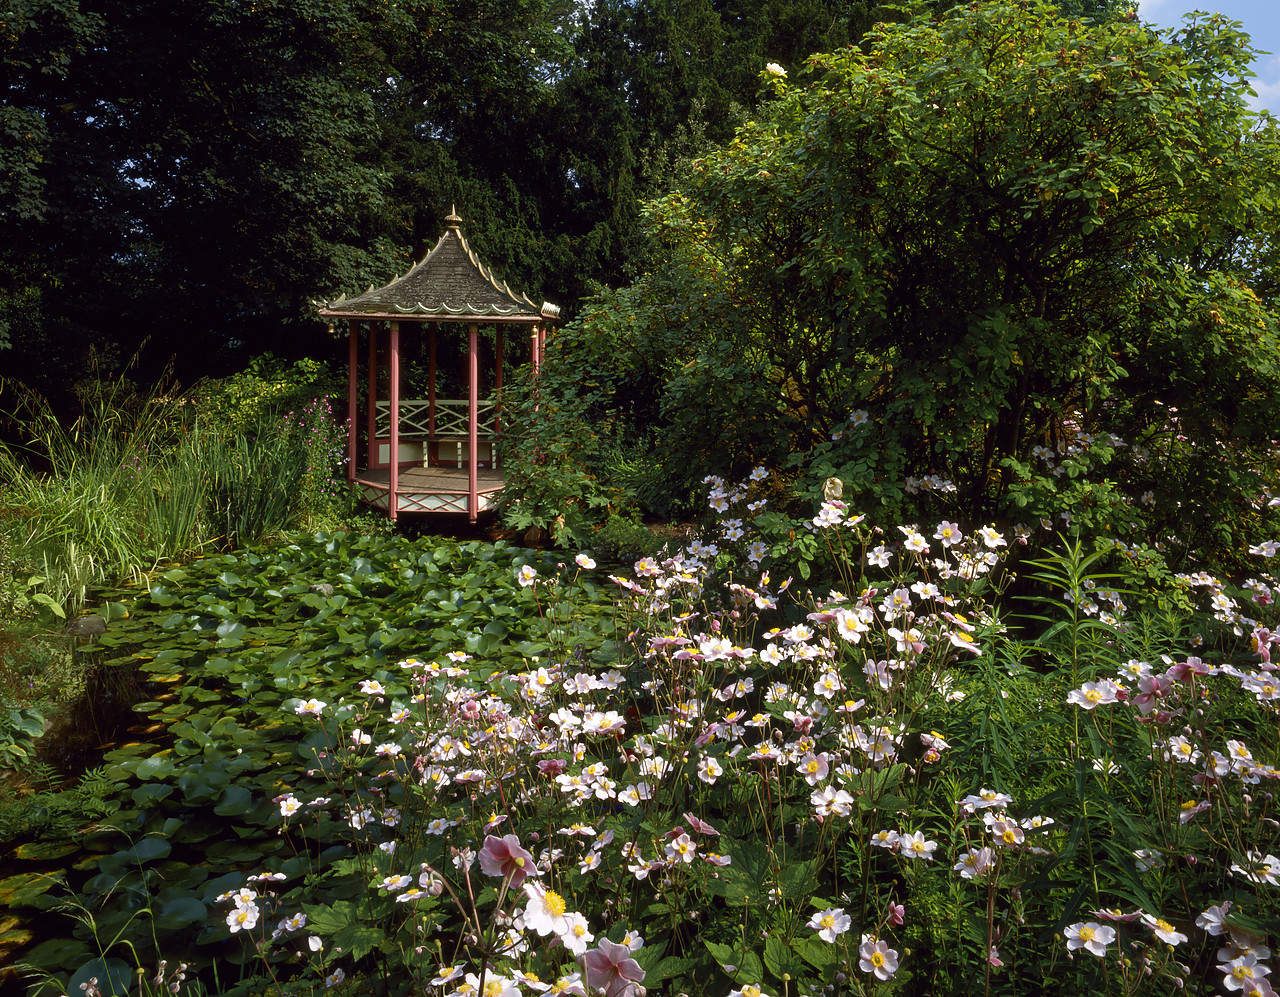 #924050-1 - Water Garden & Gazebo, Hill Court Gardens, Herefordshire, England